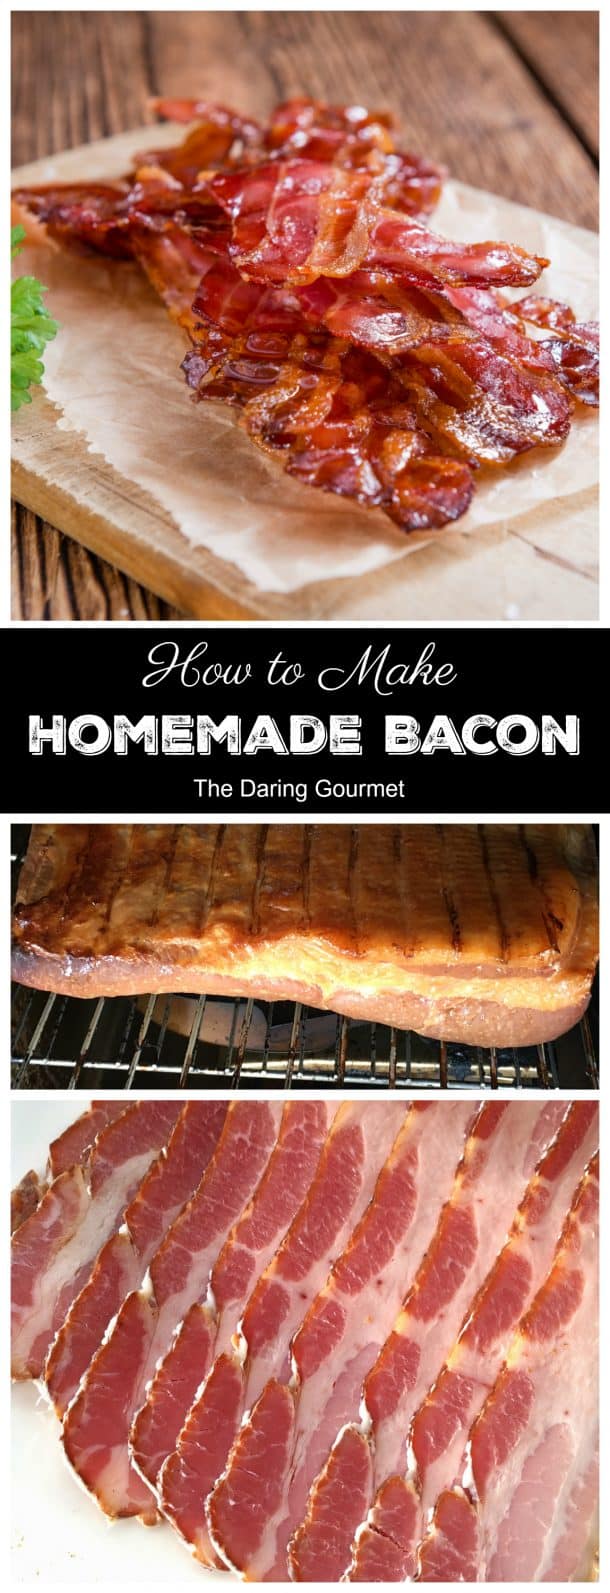 Homemade Bacon - The Daring Gourmet